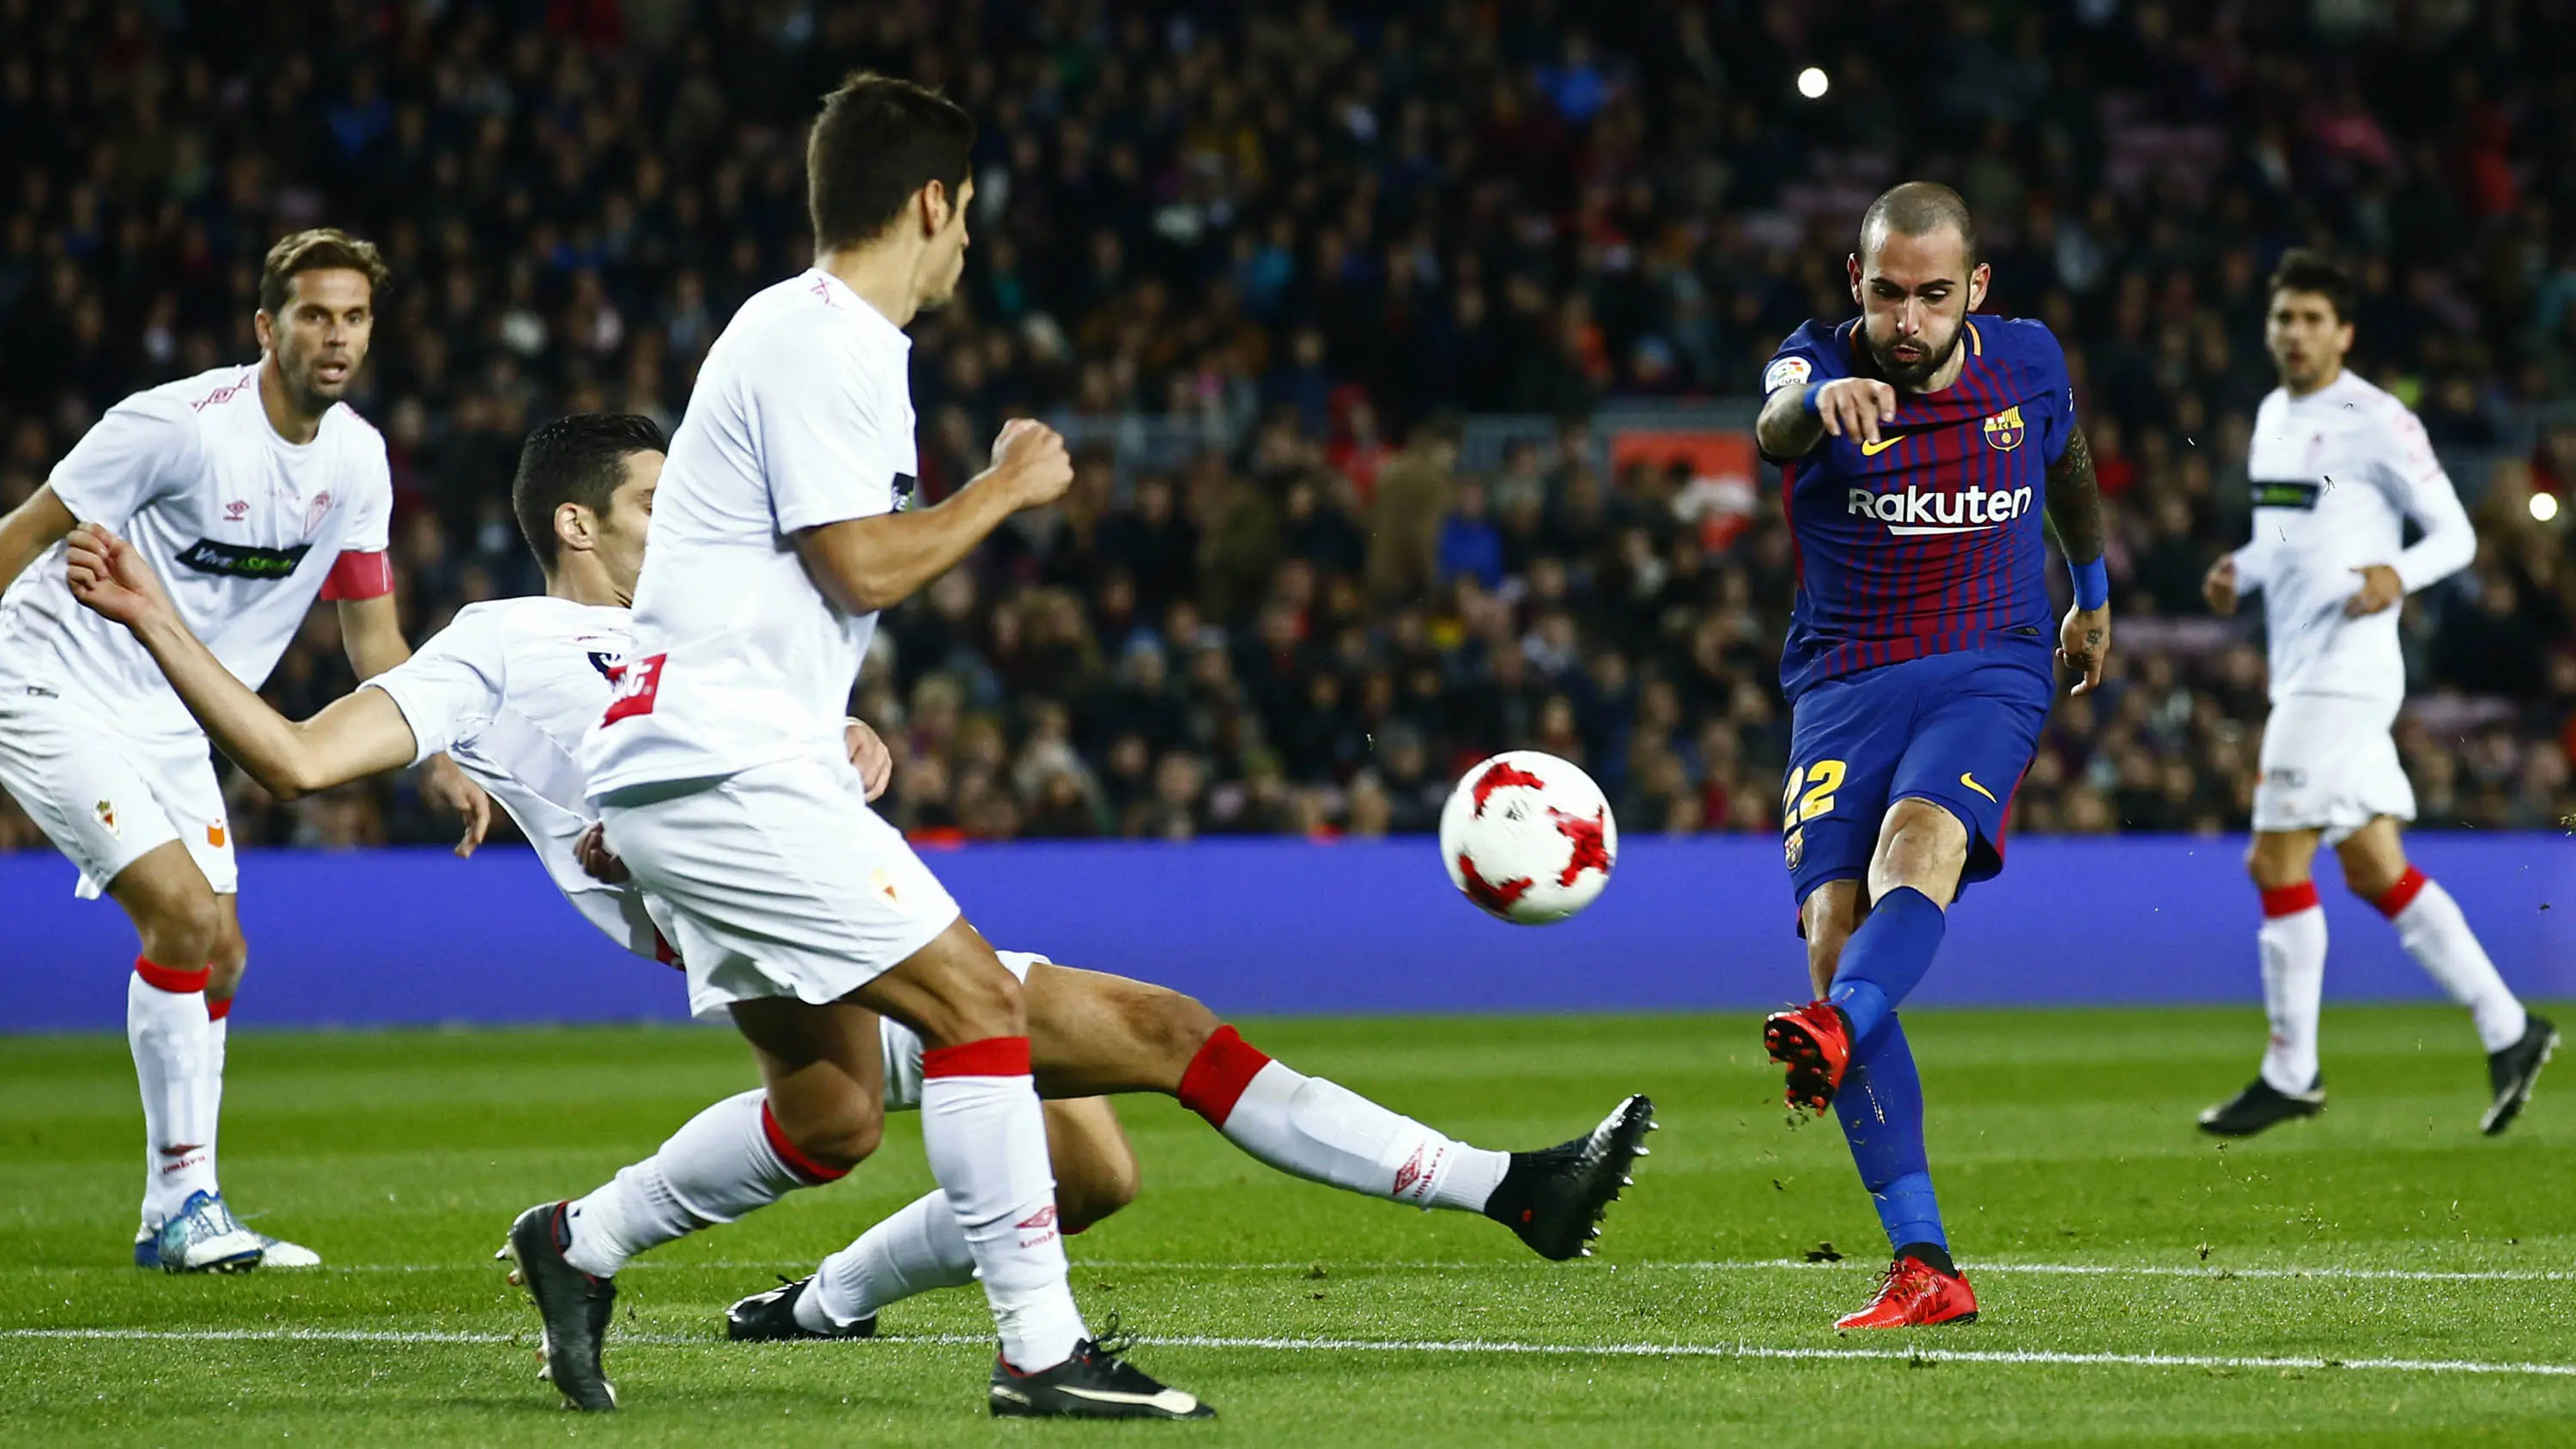 Gelandang Barcelona, Aleix Vidal, melepas tendangan saat melawan Murcia pada babak 32 besar Copa del Rey di Stadion Camp Nou, Barcelona, Rabu (29/11/2017). Barcelona menang 5-0 atas Murcia dan lolos dengan agregat 8-0. (AP/Manu Fernandez)